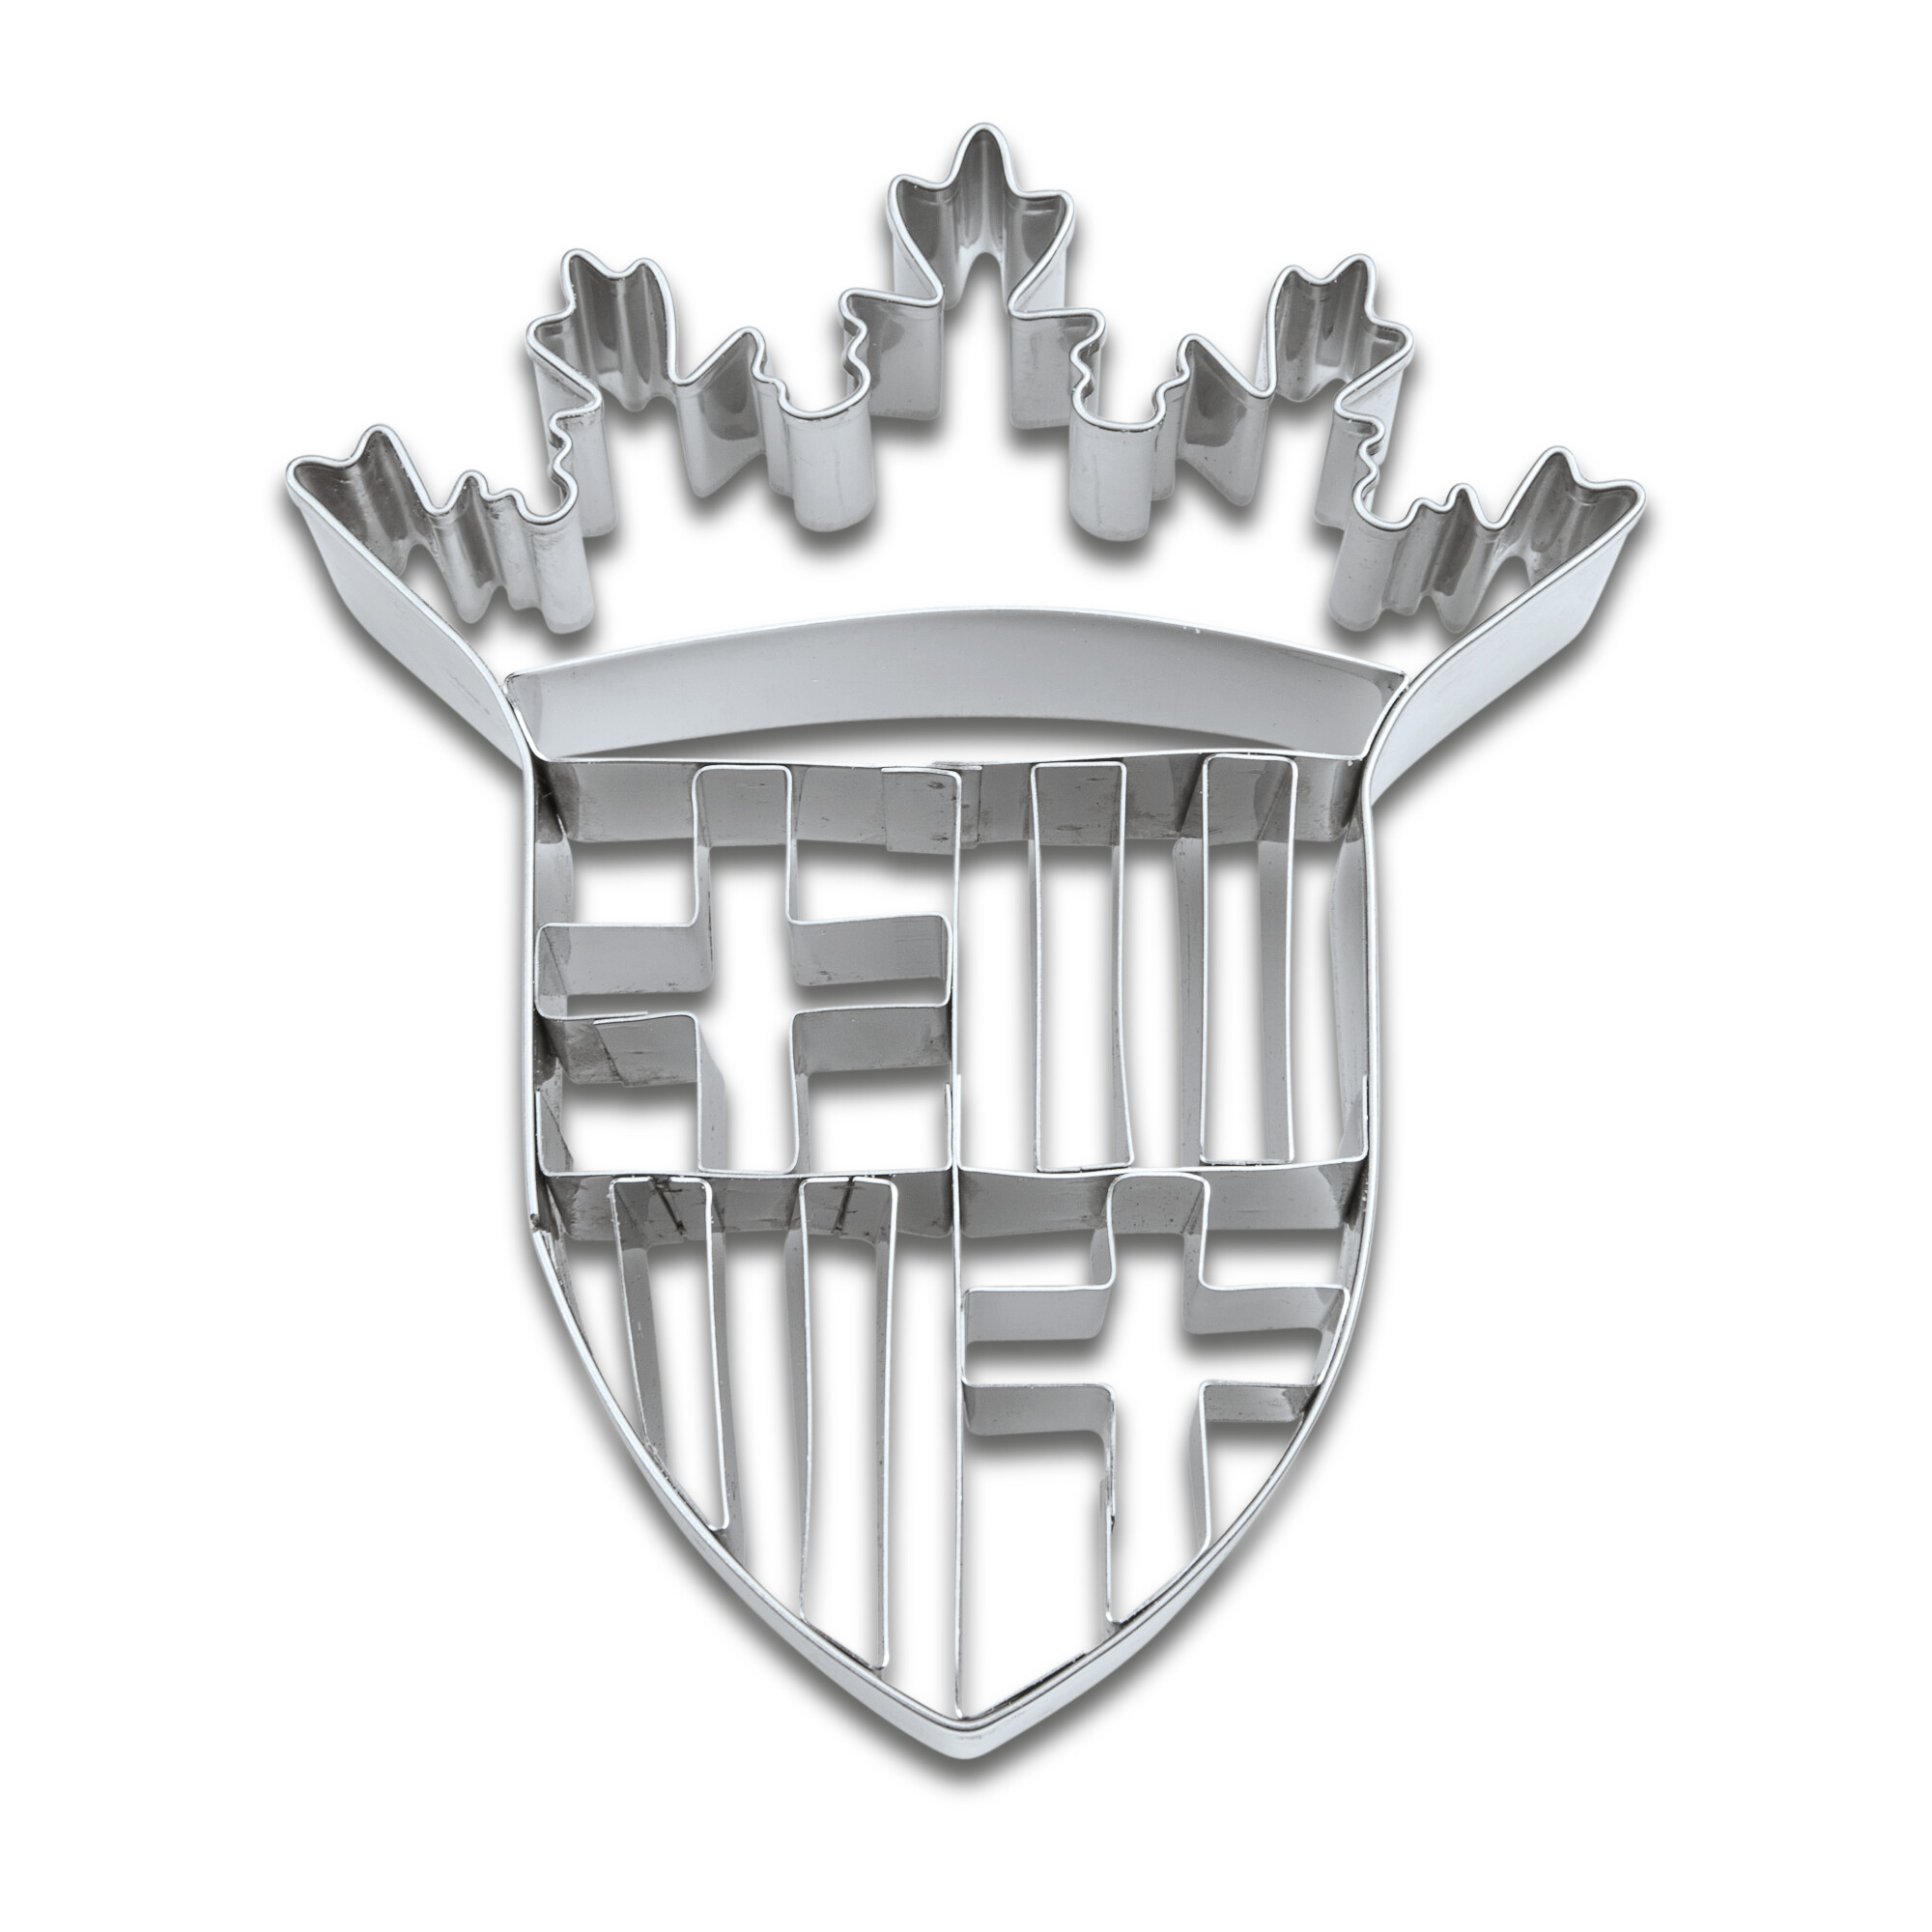 Präge-Ausstecher – Barcelona Wappen